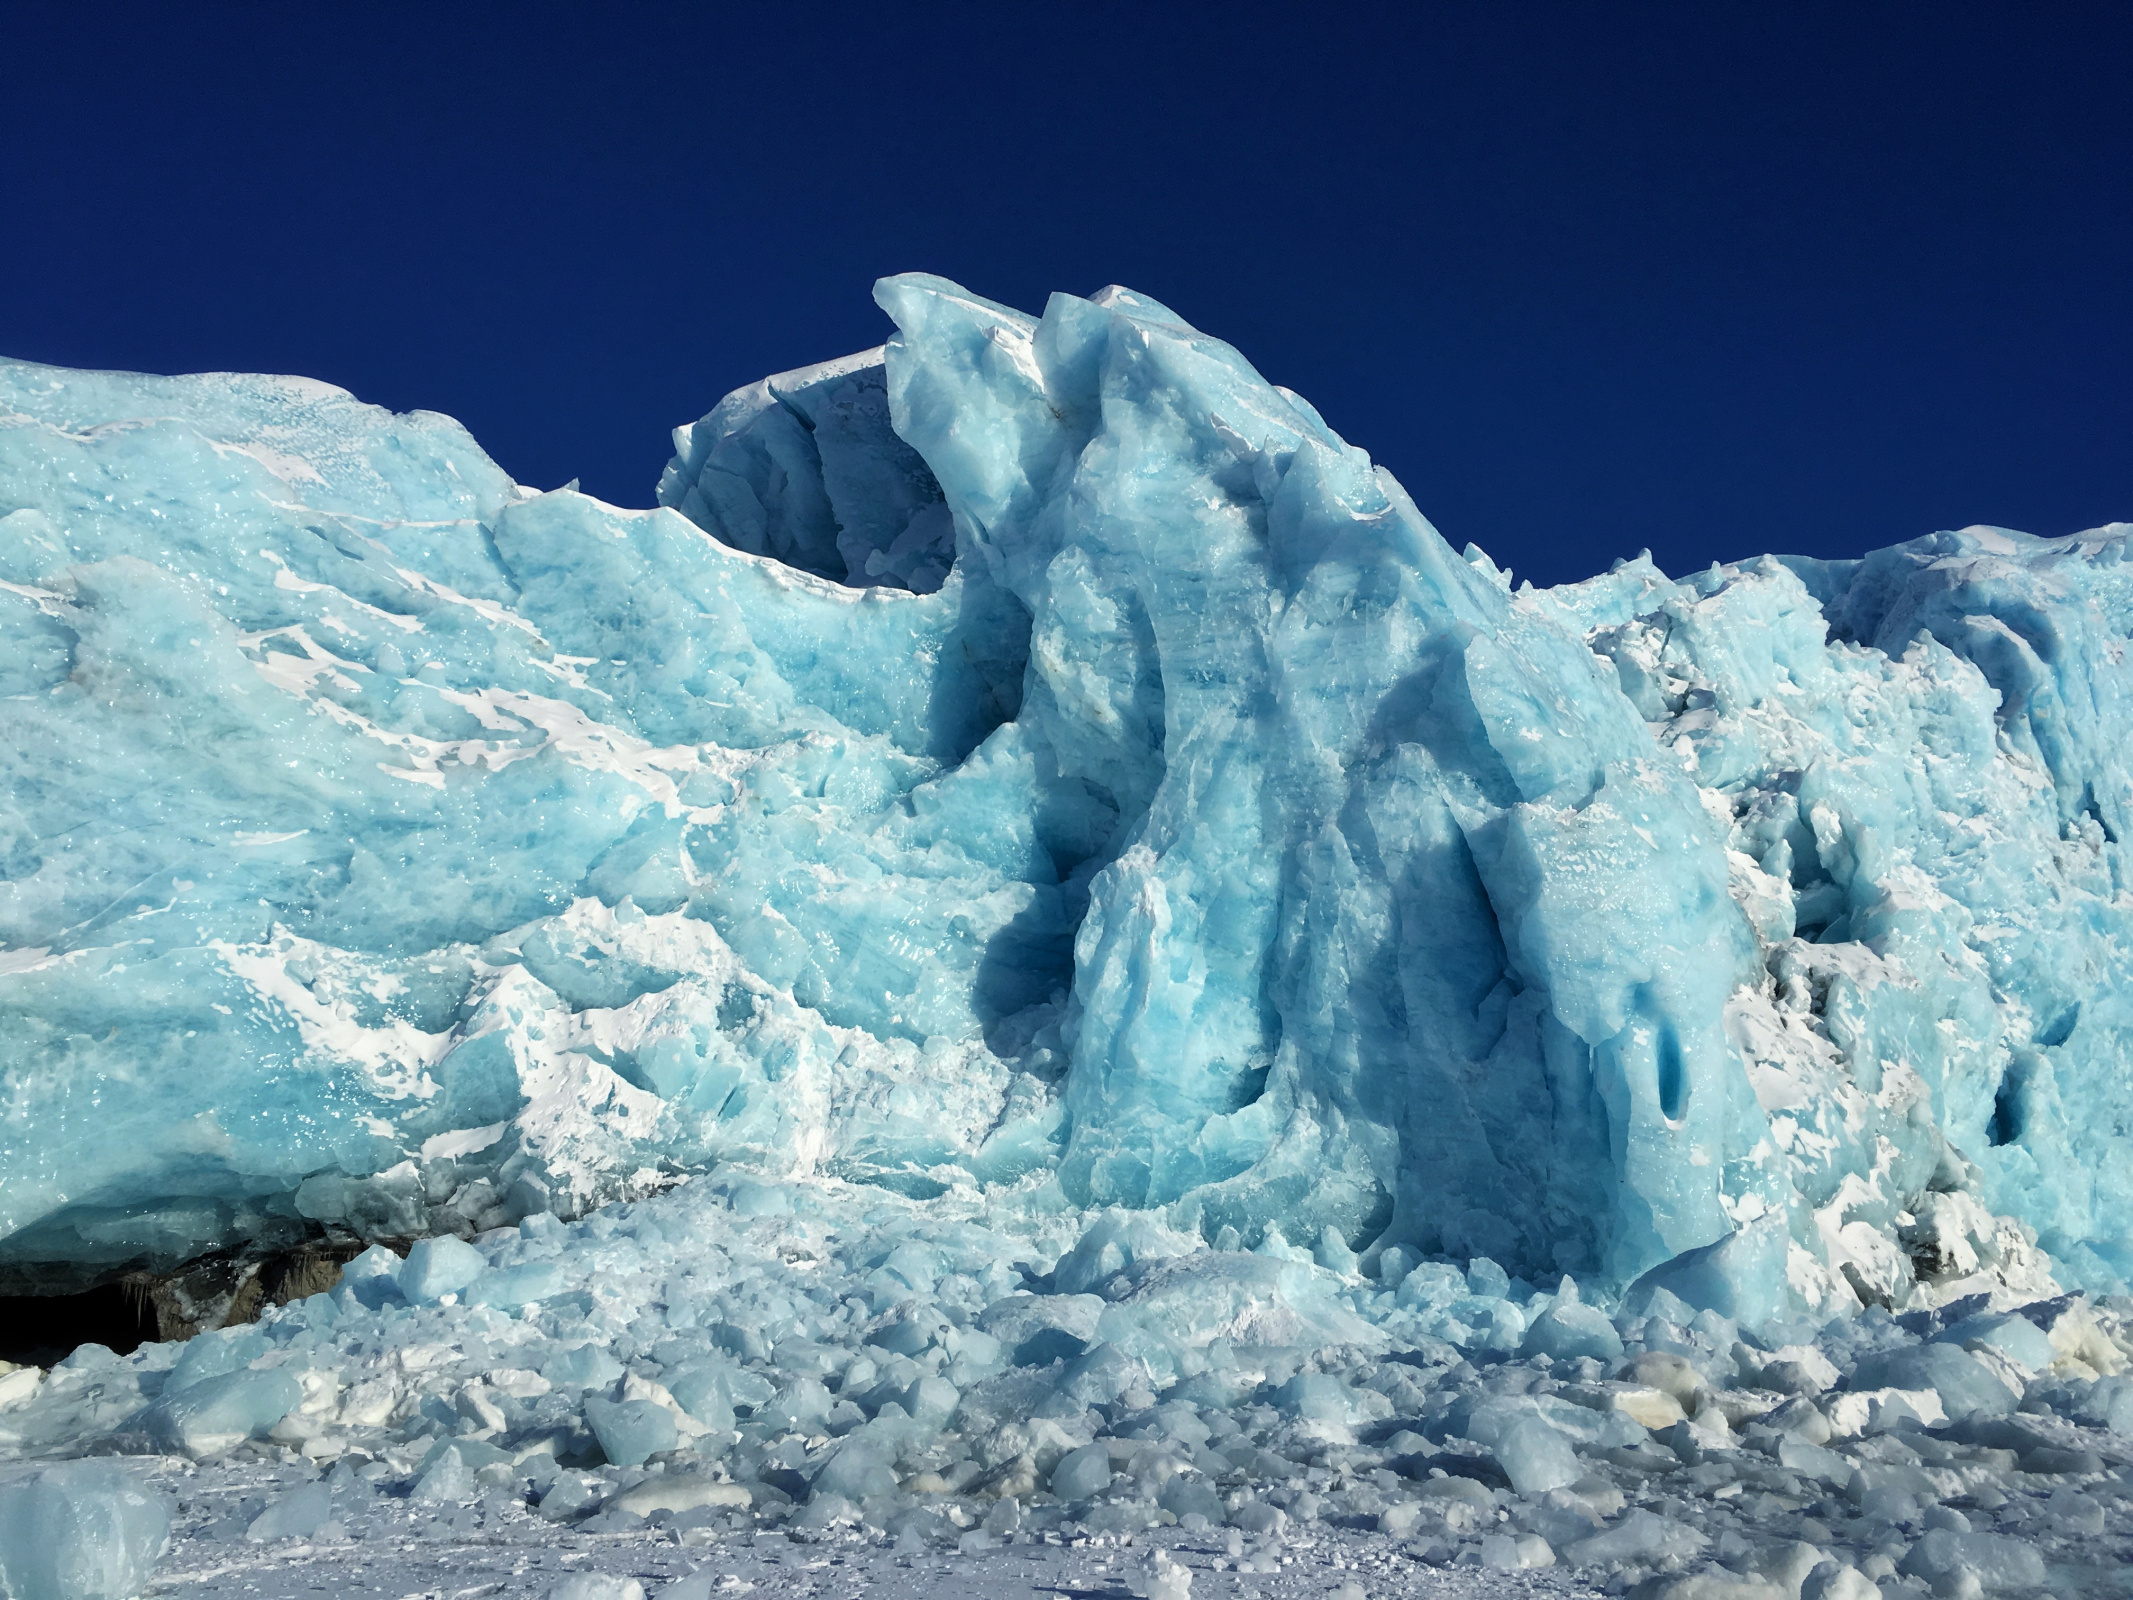 Ледник в районе посёлка Пирамида, Шпицберген. Фото: Анастасия Чеснокова, участник конкурса РГО 